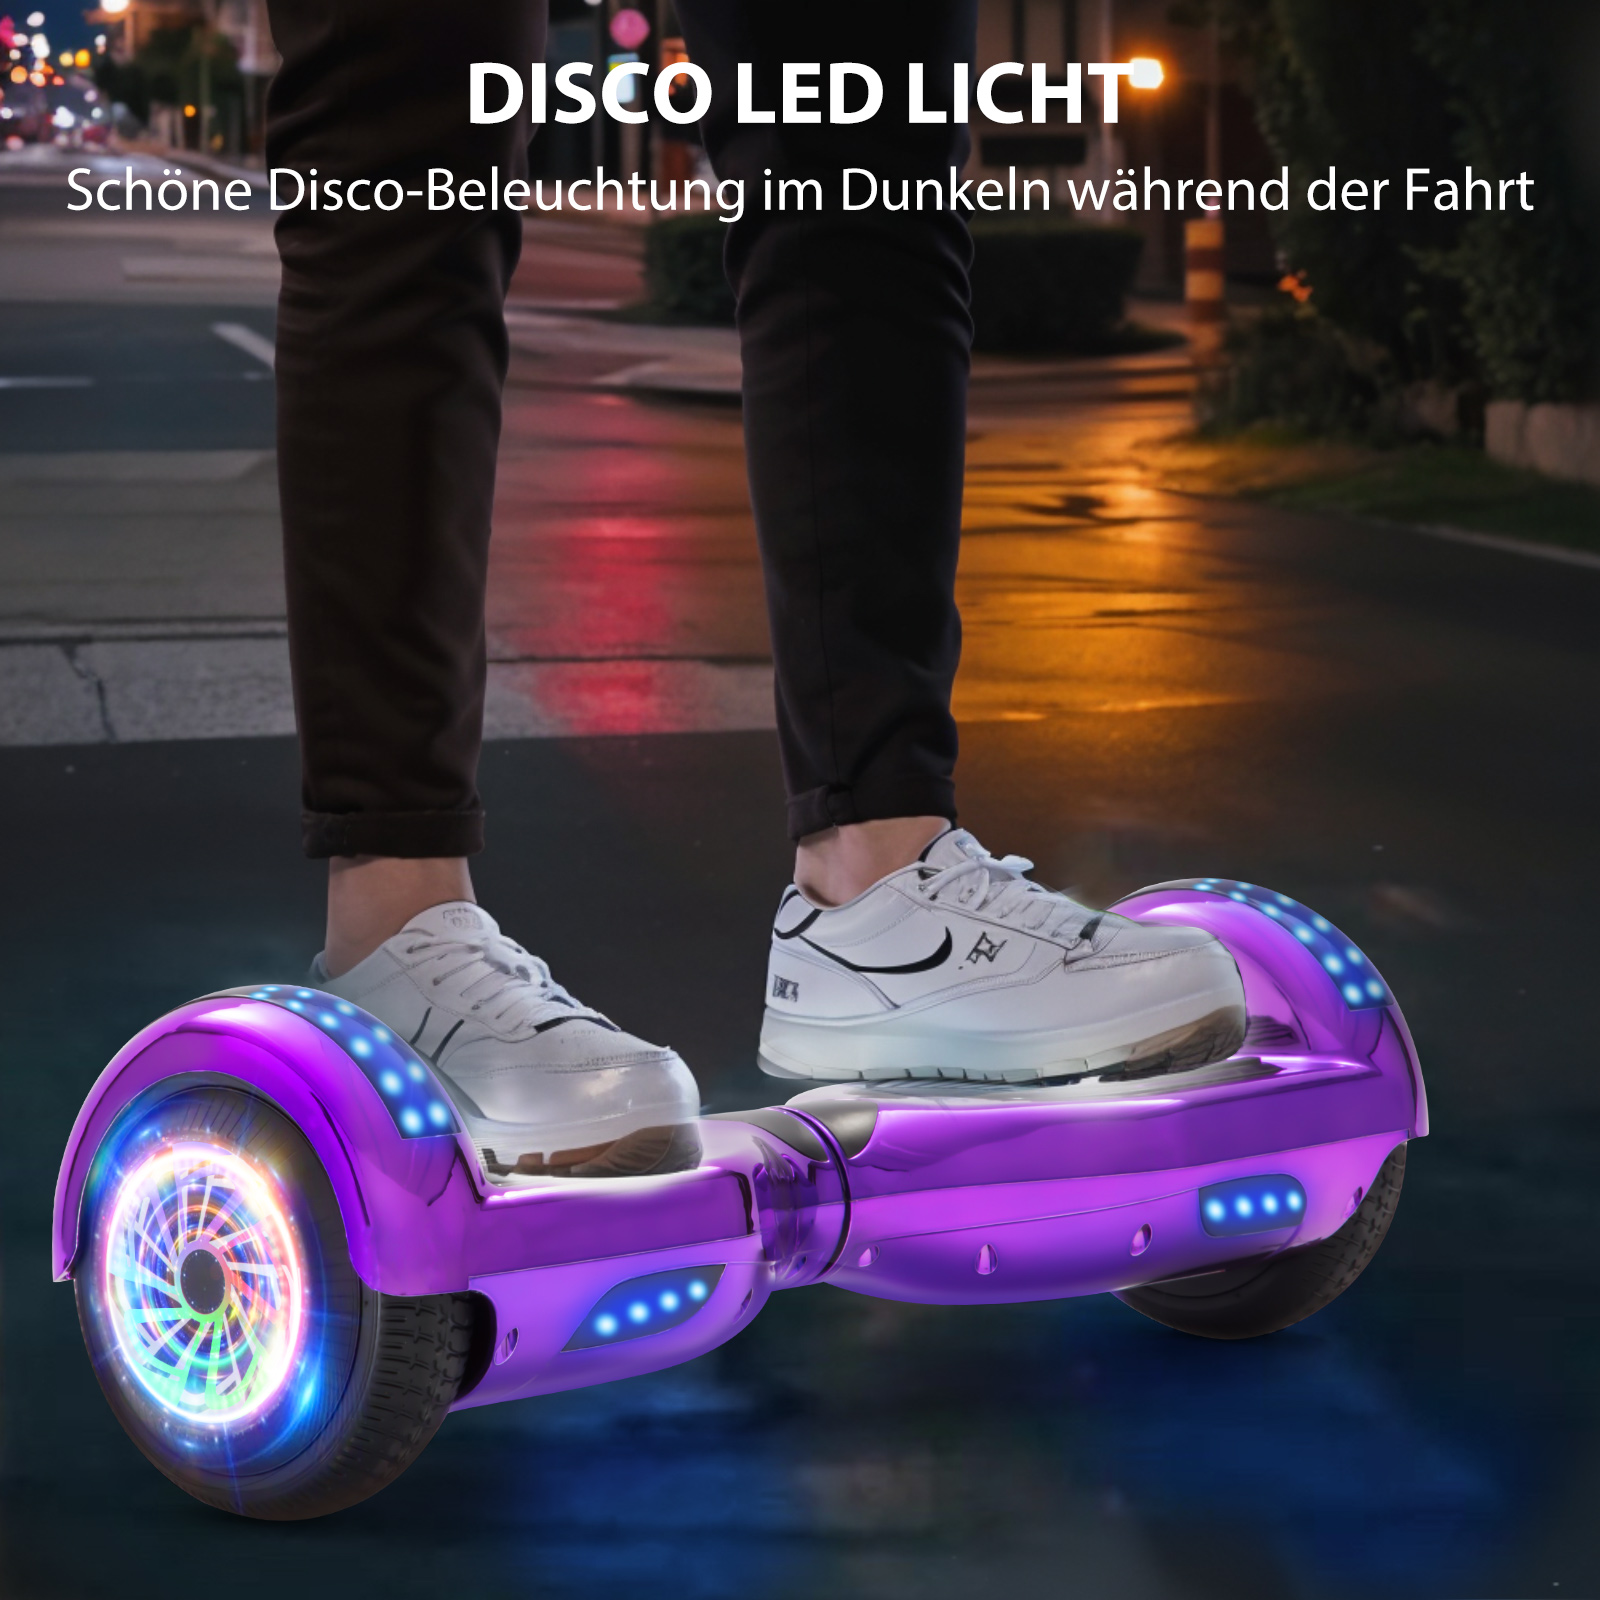 Neues 6,5" Hoverboard lila mit Bluetooth Musik Lautsprecher und LED Licht - 500W 12km/h